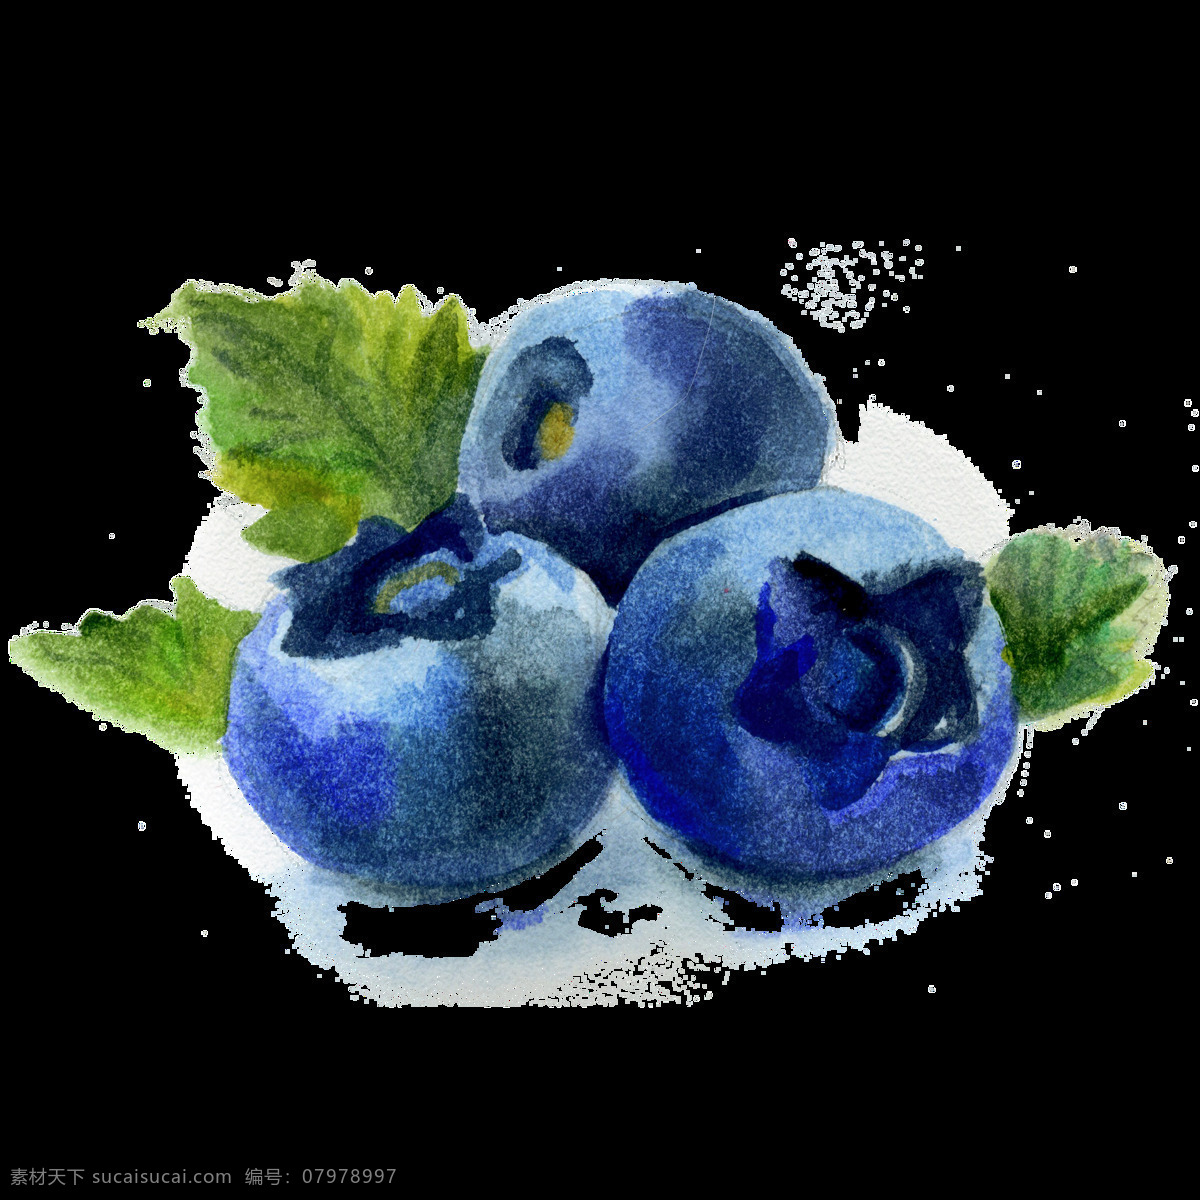 水果 蓝莓 卡通 透明 抠图专用 装饰 设计素材